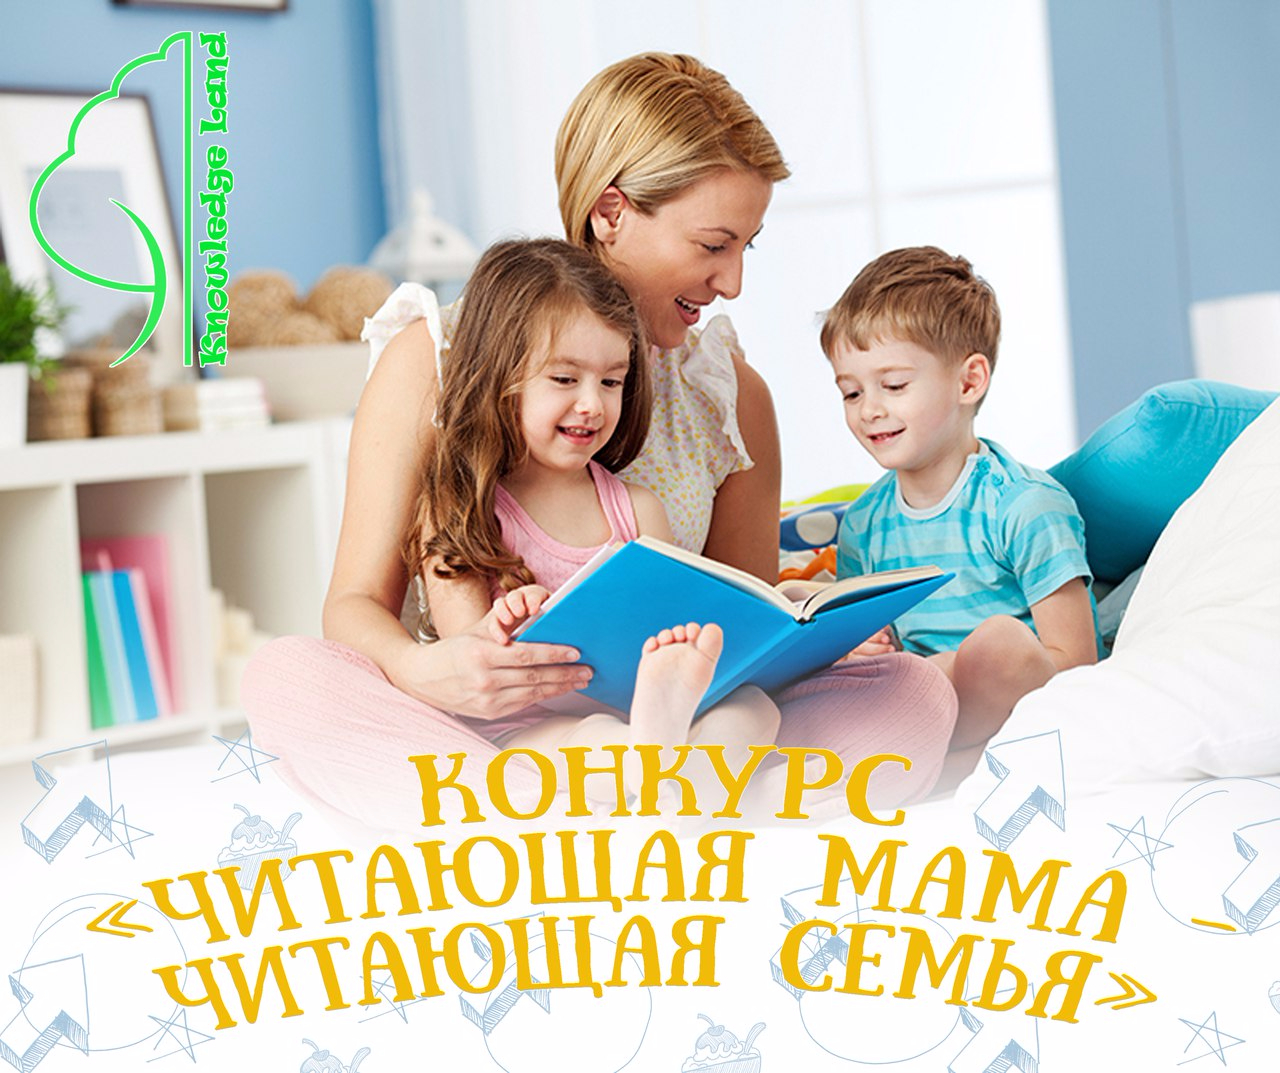 Будь моей семьей читать. Читающая семья. Чтение книг семьей. Читаем с мамой. Читающая семья конкурс.